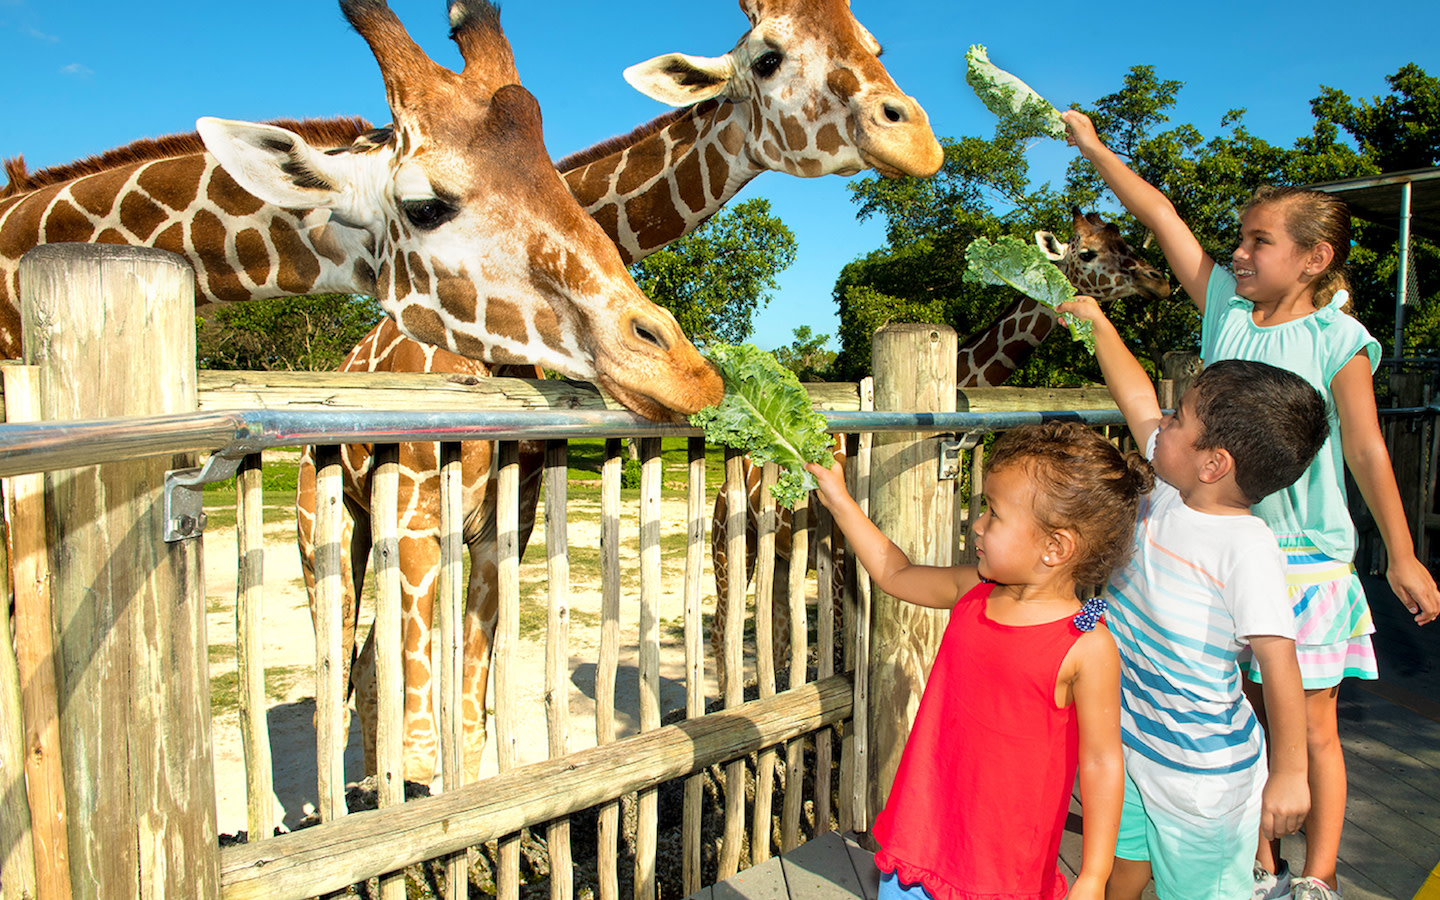 Zoo Miami Kids Feeding Giraffes 12.17.20 405706D2 5056 A36A 0B8E0EDD9C2F8424 405705585056a36 40570728 5056 A36a 0bd4ba282c839594 